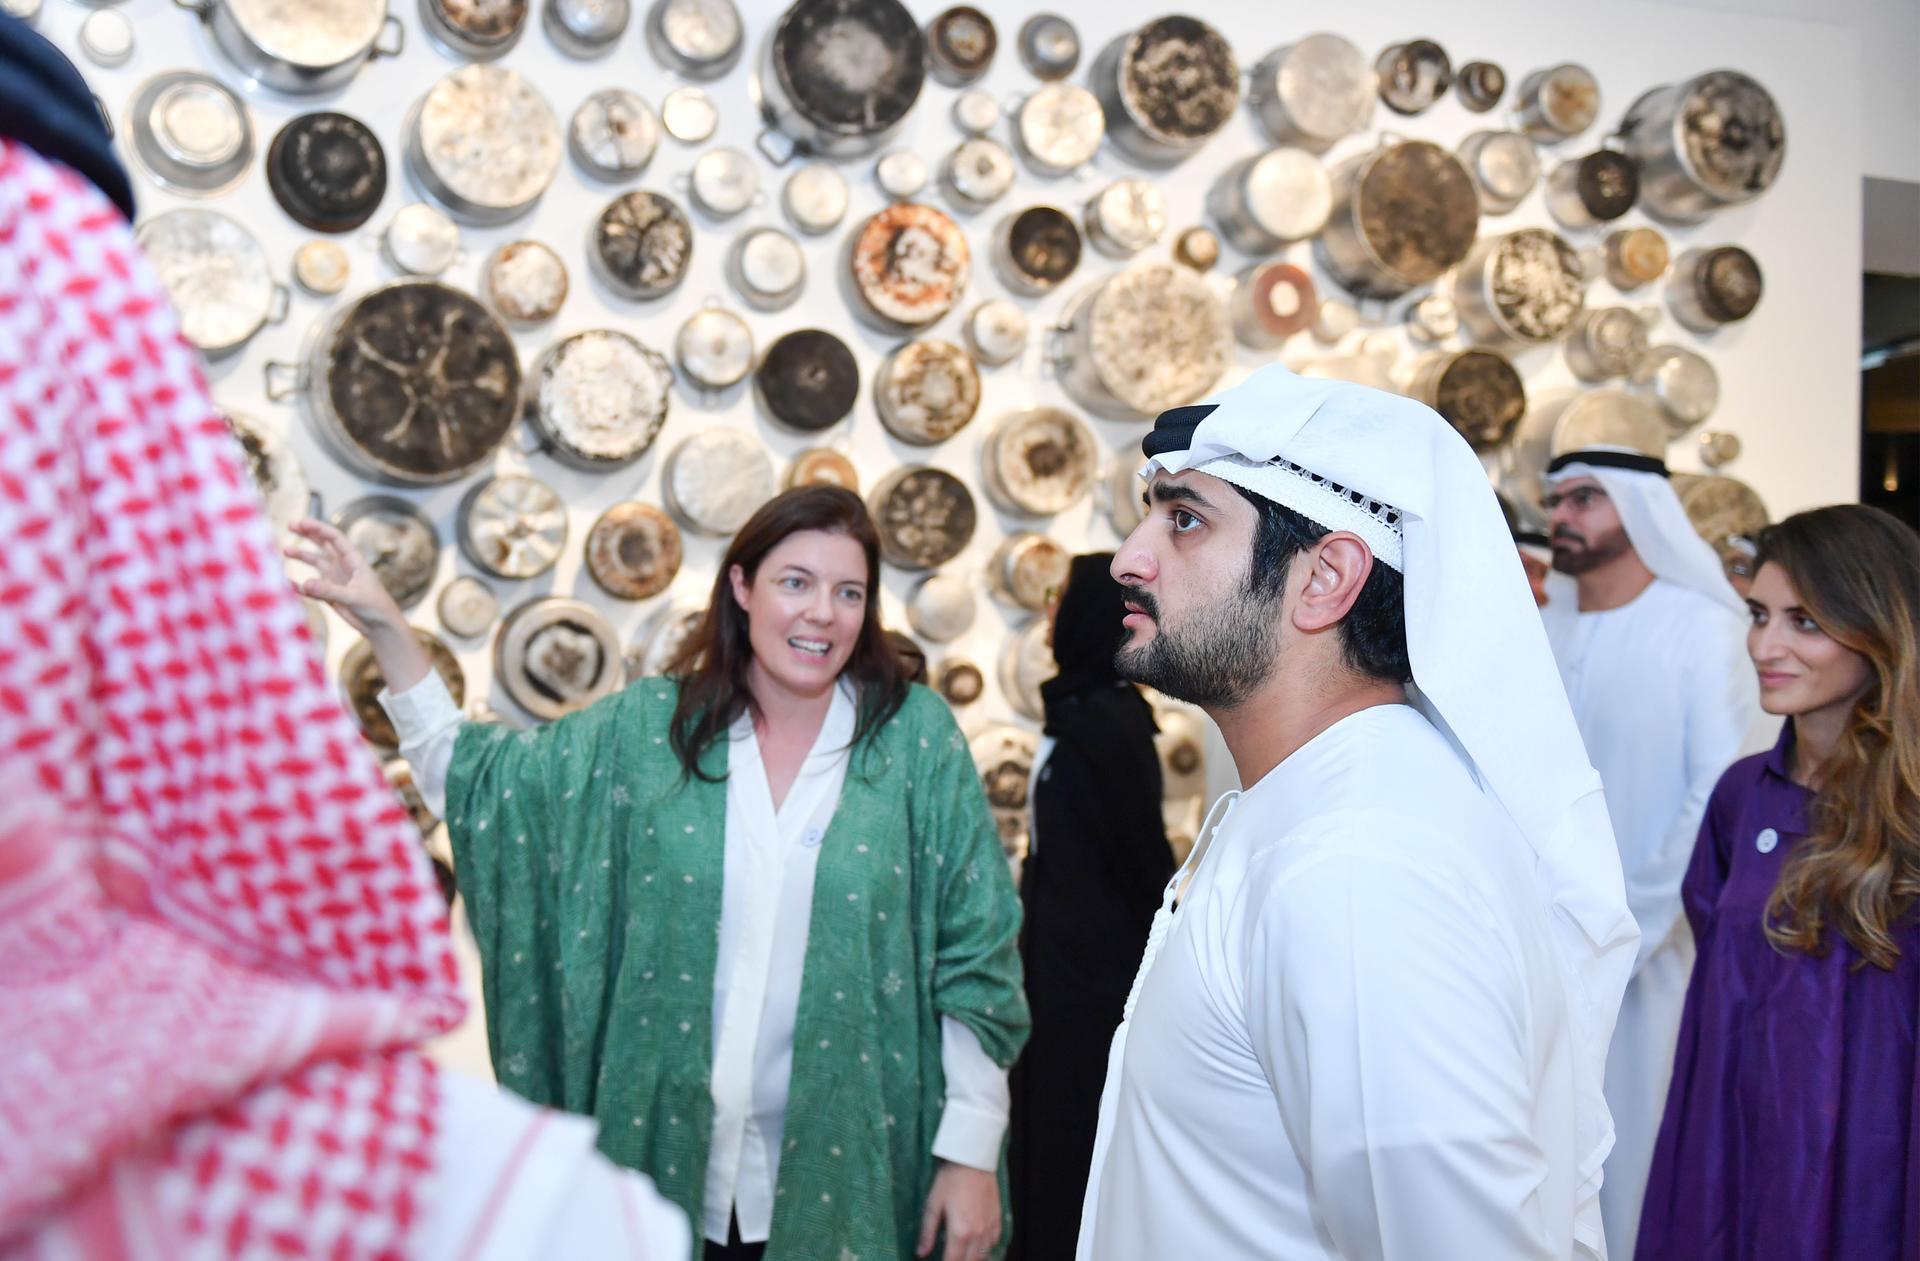 مركز جميل الفني أول مؤسسة فنية معاصرة في دبي